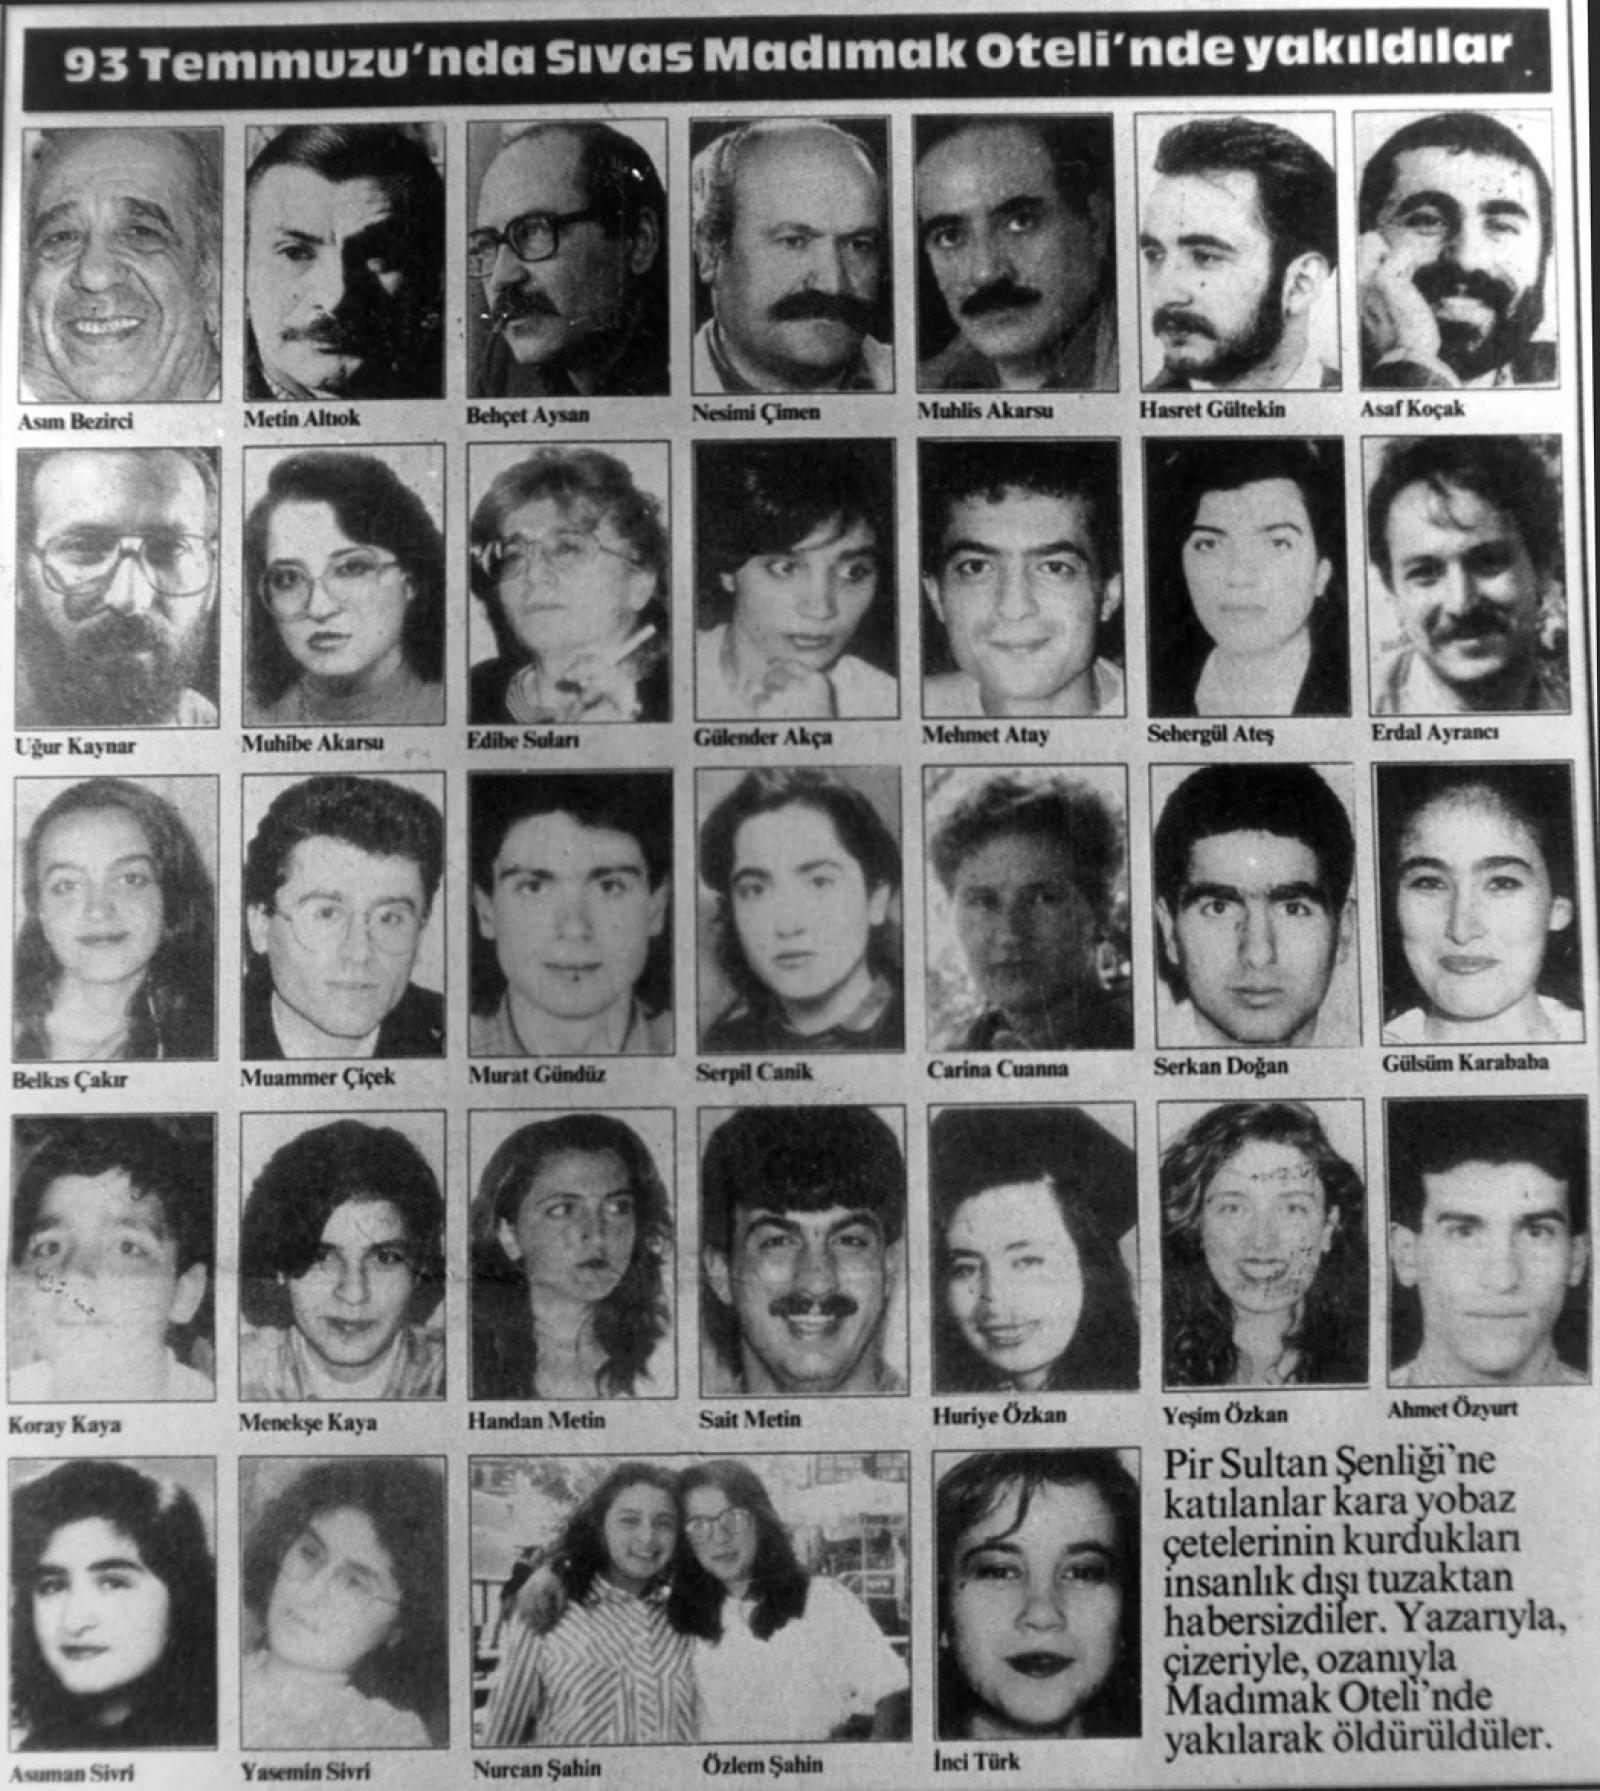 مجزرة سيفاس، صور الضّحايا، جريدة جمهوريت، 2 تمّوز/ يوليو 1994